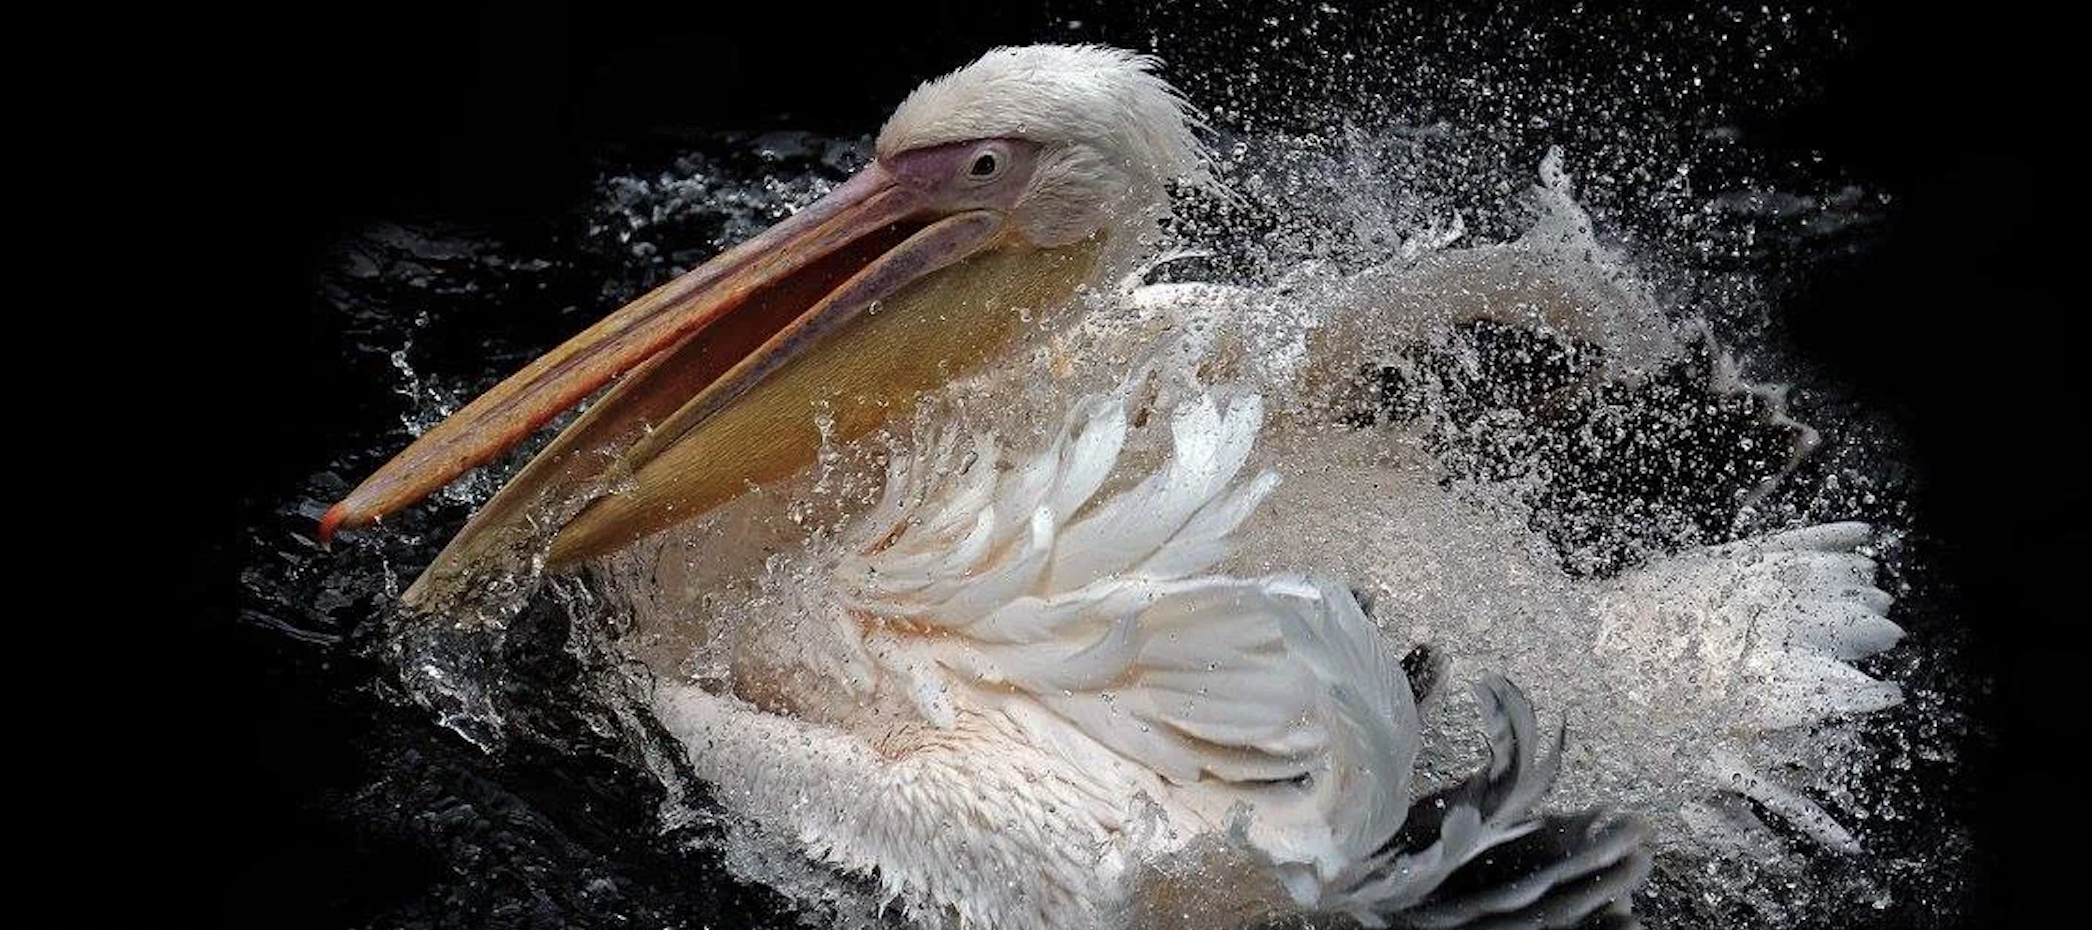 Пеликанов в Московском зоопарке переселили в летний пруд. Фото: пресс-служба Московского зоопарка